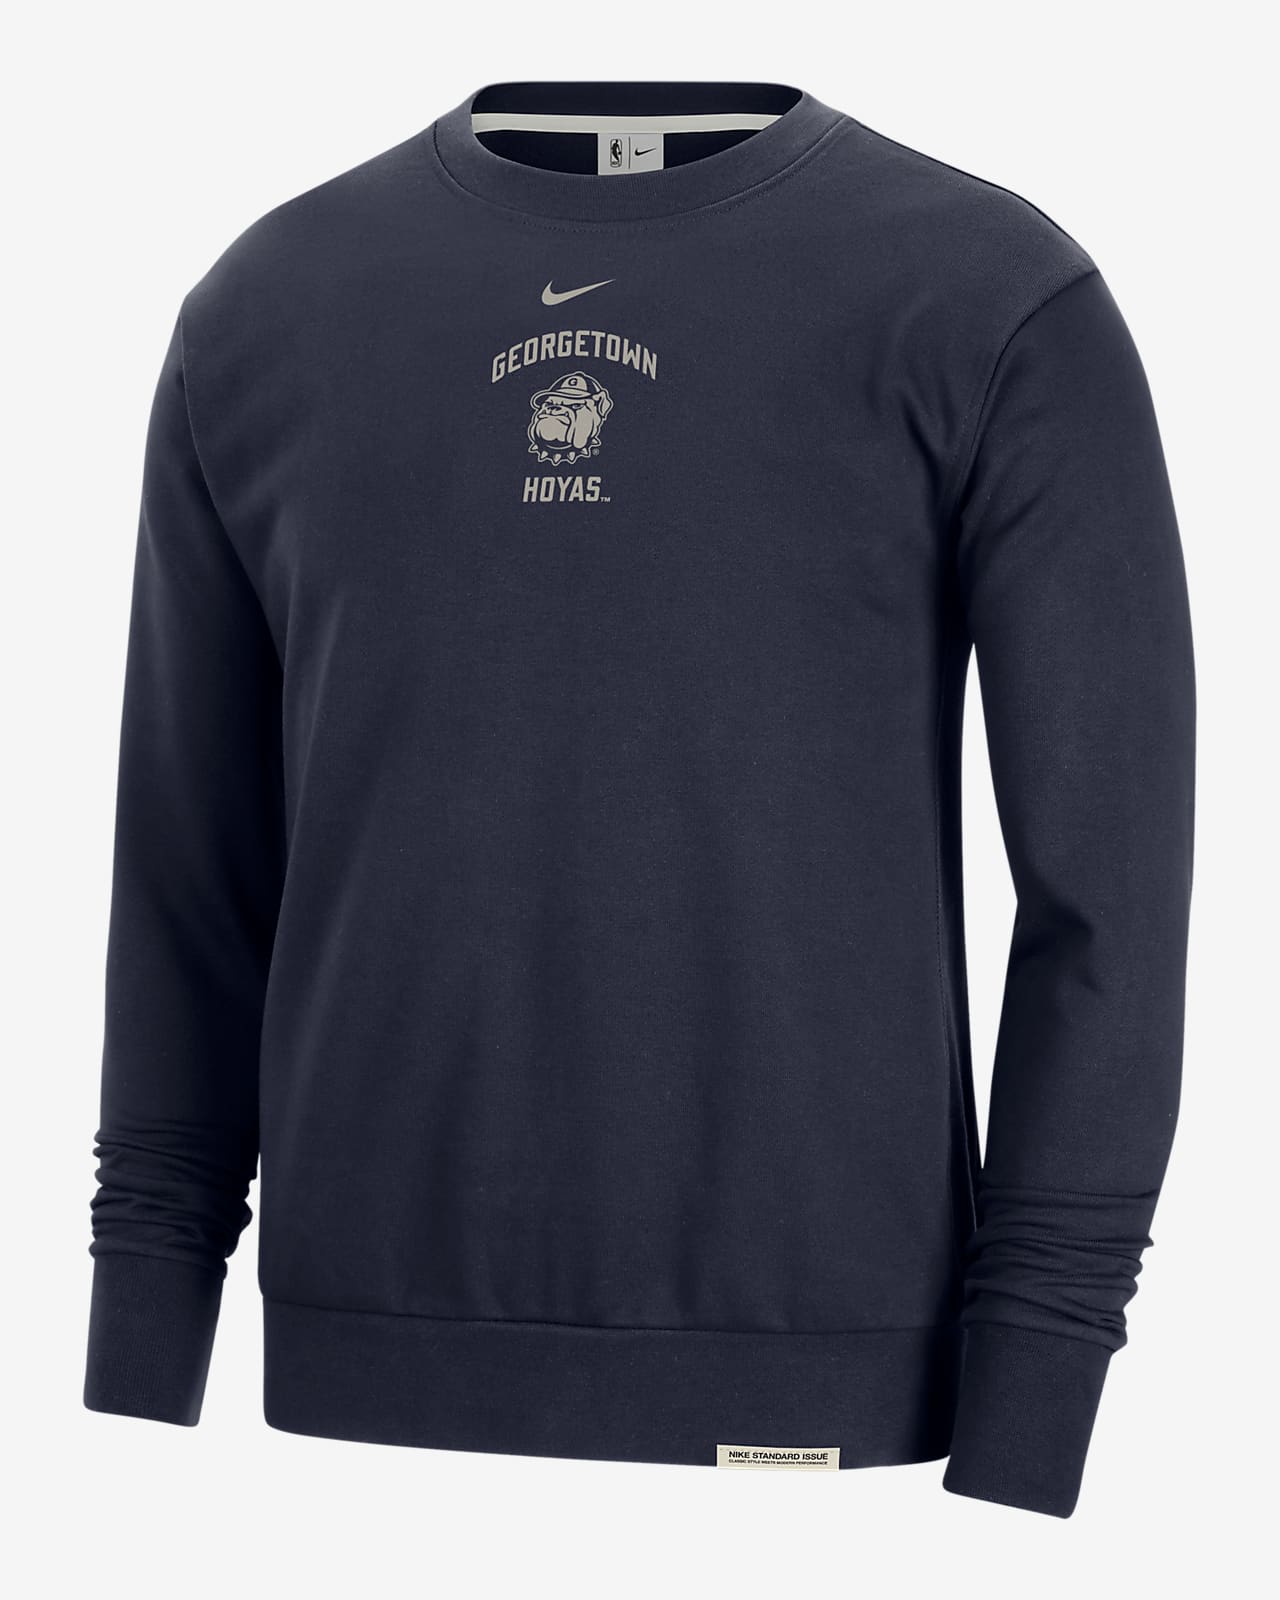 Georgetown Standard Issue Men's Nike College Fleece Crew-Neck Sweatshirt